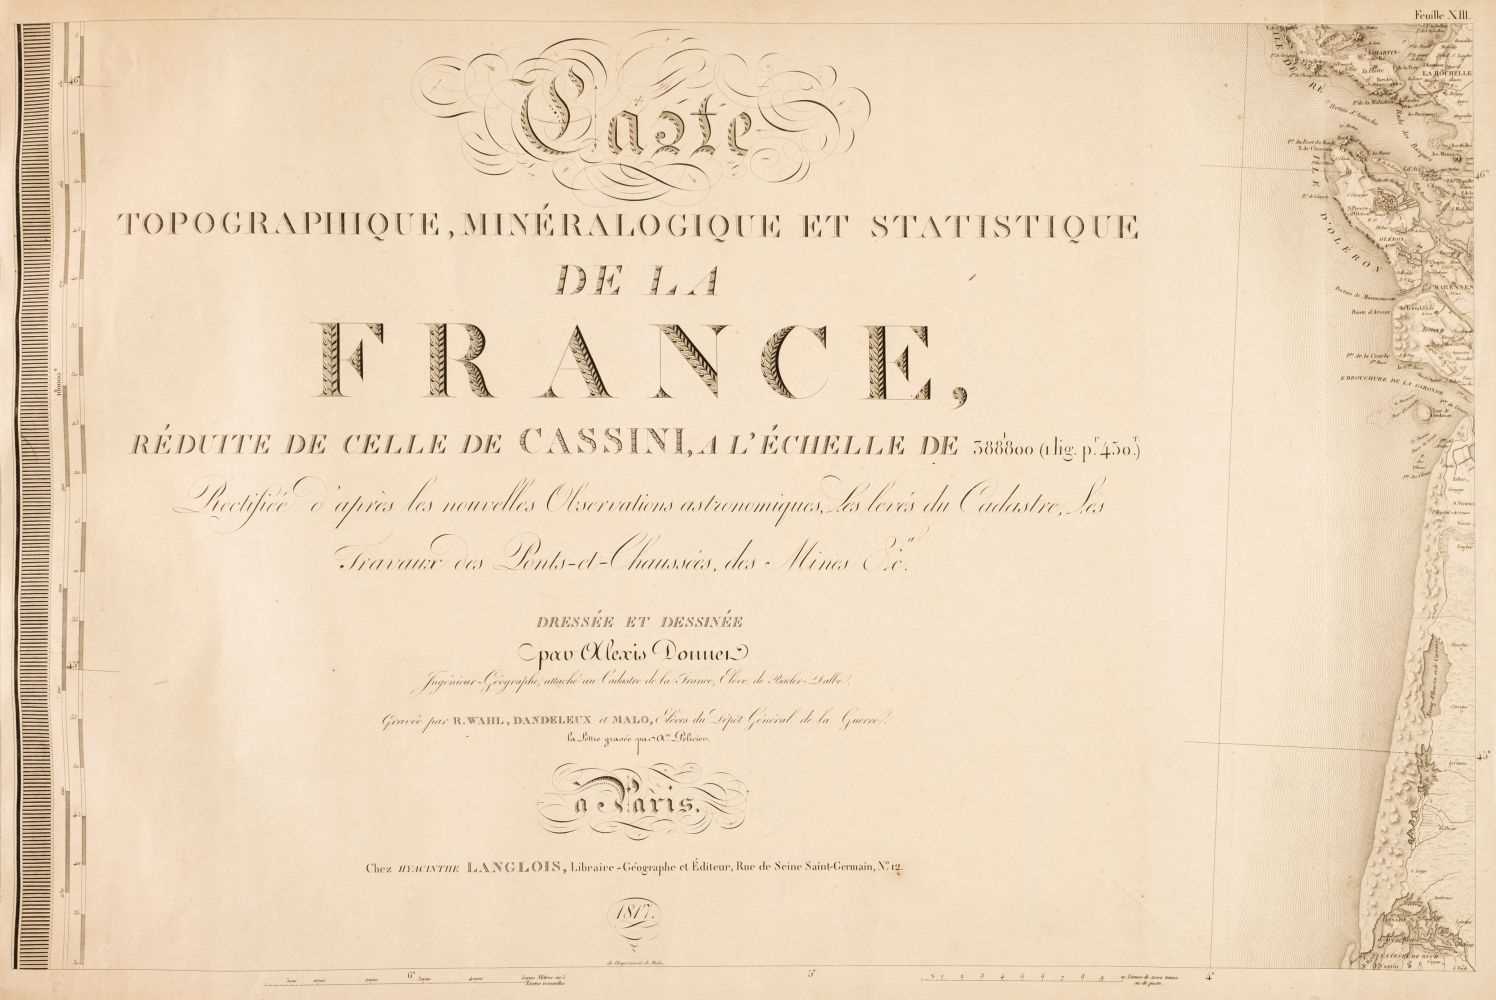 Lot 12 - France. Carte topographique minéralogique et Statistique de la France